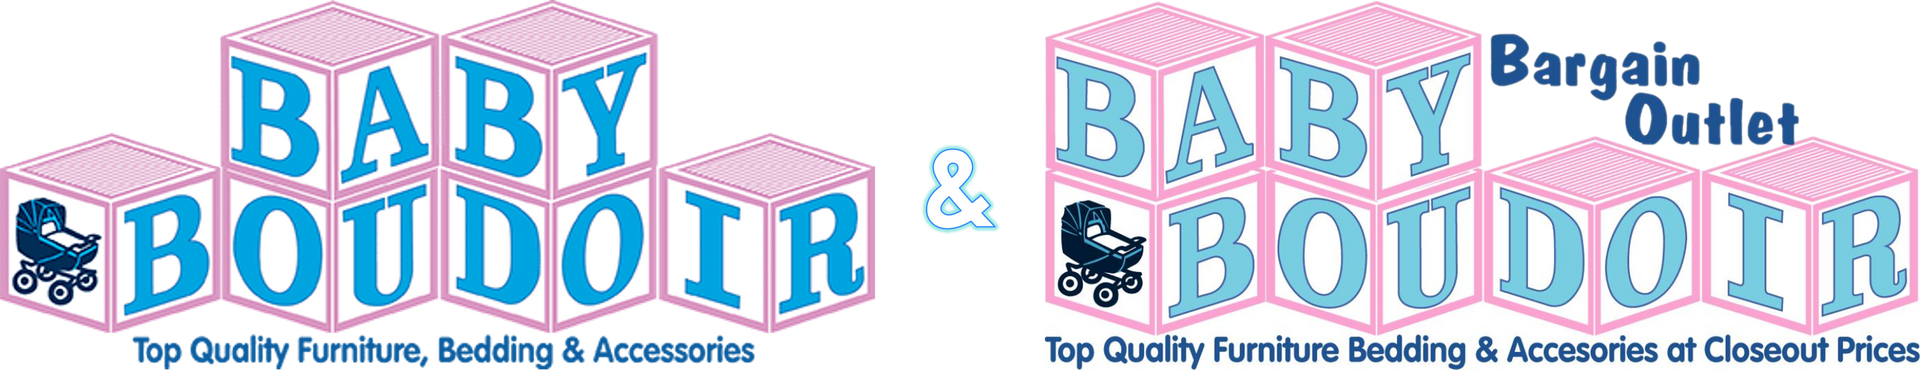 Baby Boudoir Logo